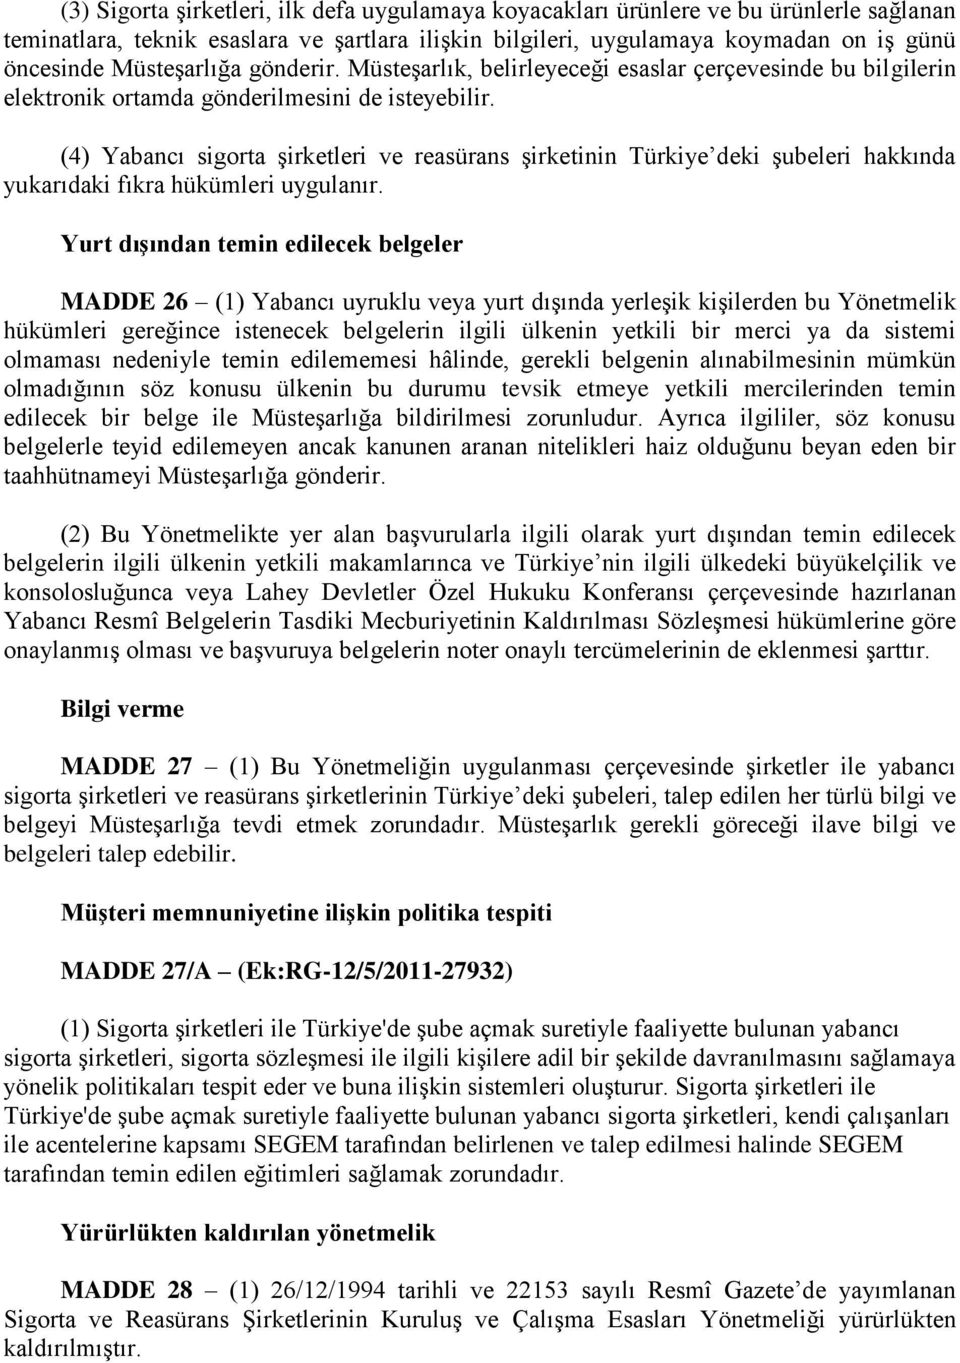 (4) Yabancı sigorta şirketleri ve reasürans şirketinin Türkiye deki şubeleri hakkında yukarıdaki fıkra hükümleri uygulanır.